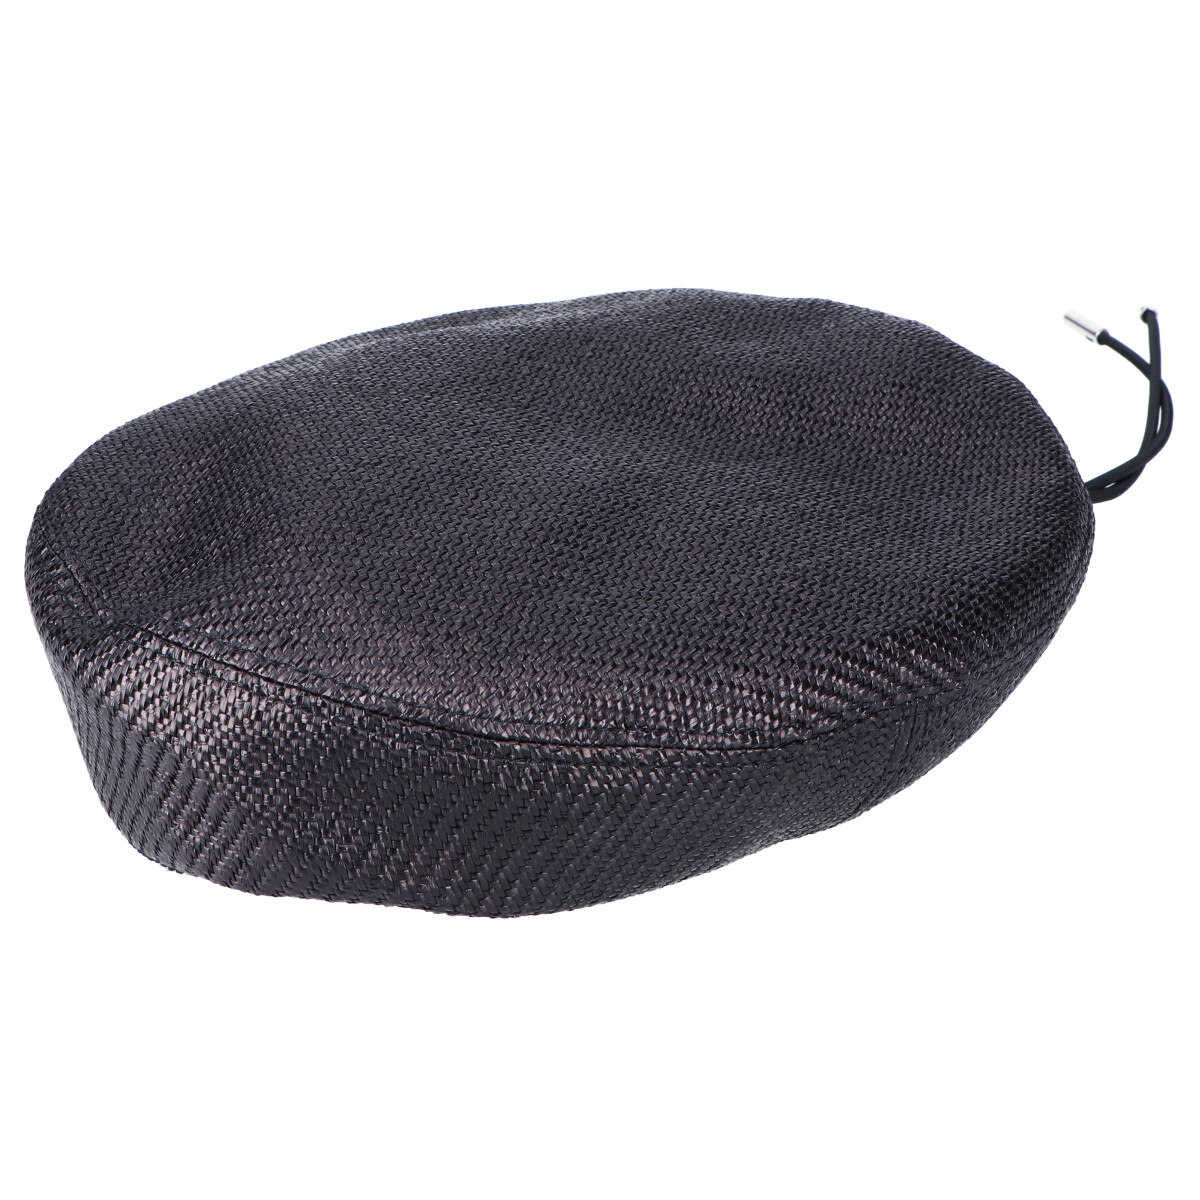 ディオールオムの183C900A5156 ラフィア テクニカル ツイル ベレー帽 メンズの買取実績です。